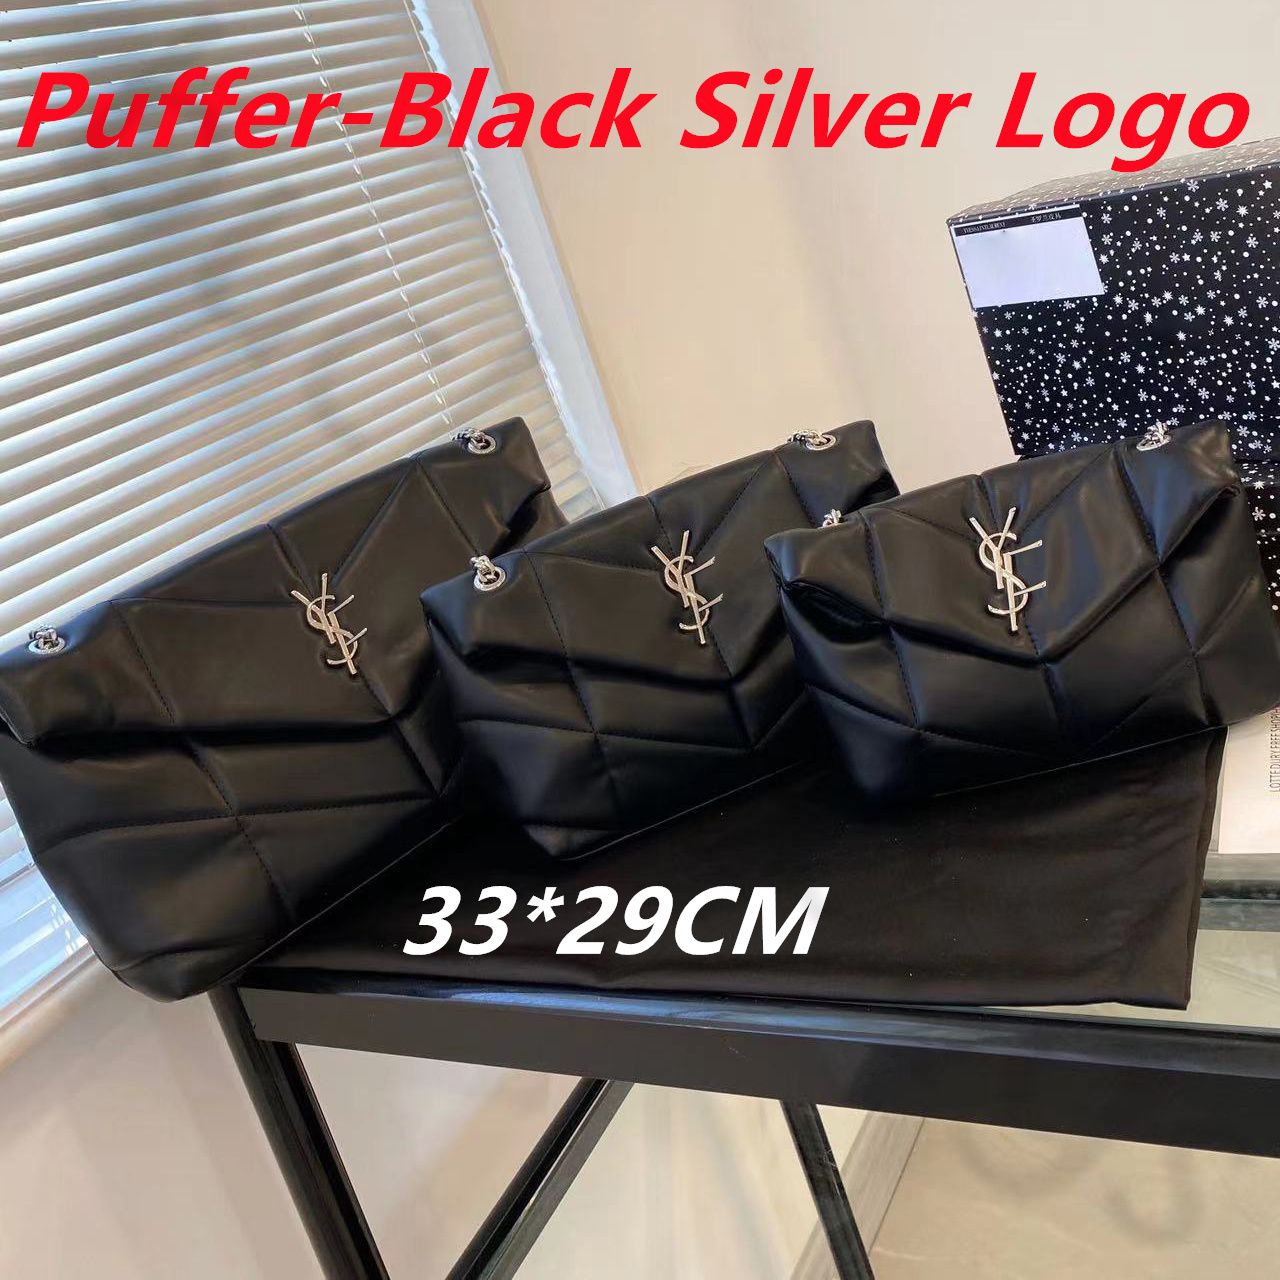 Puffer-Black Silver m